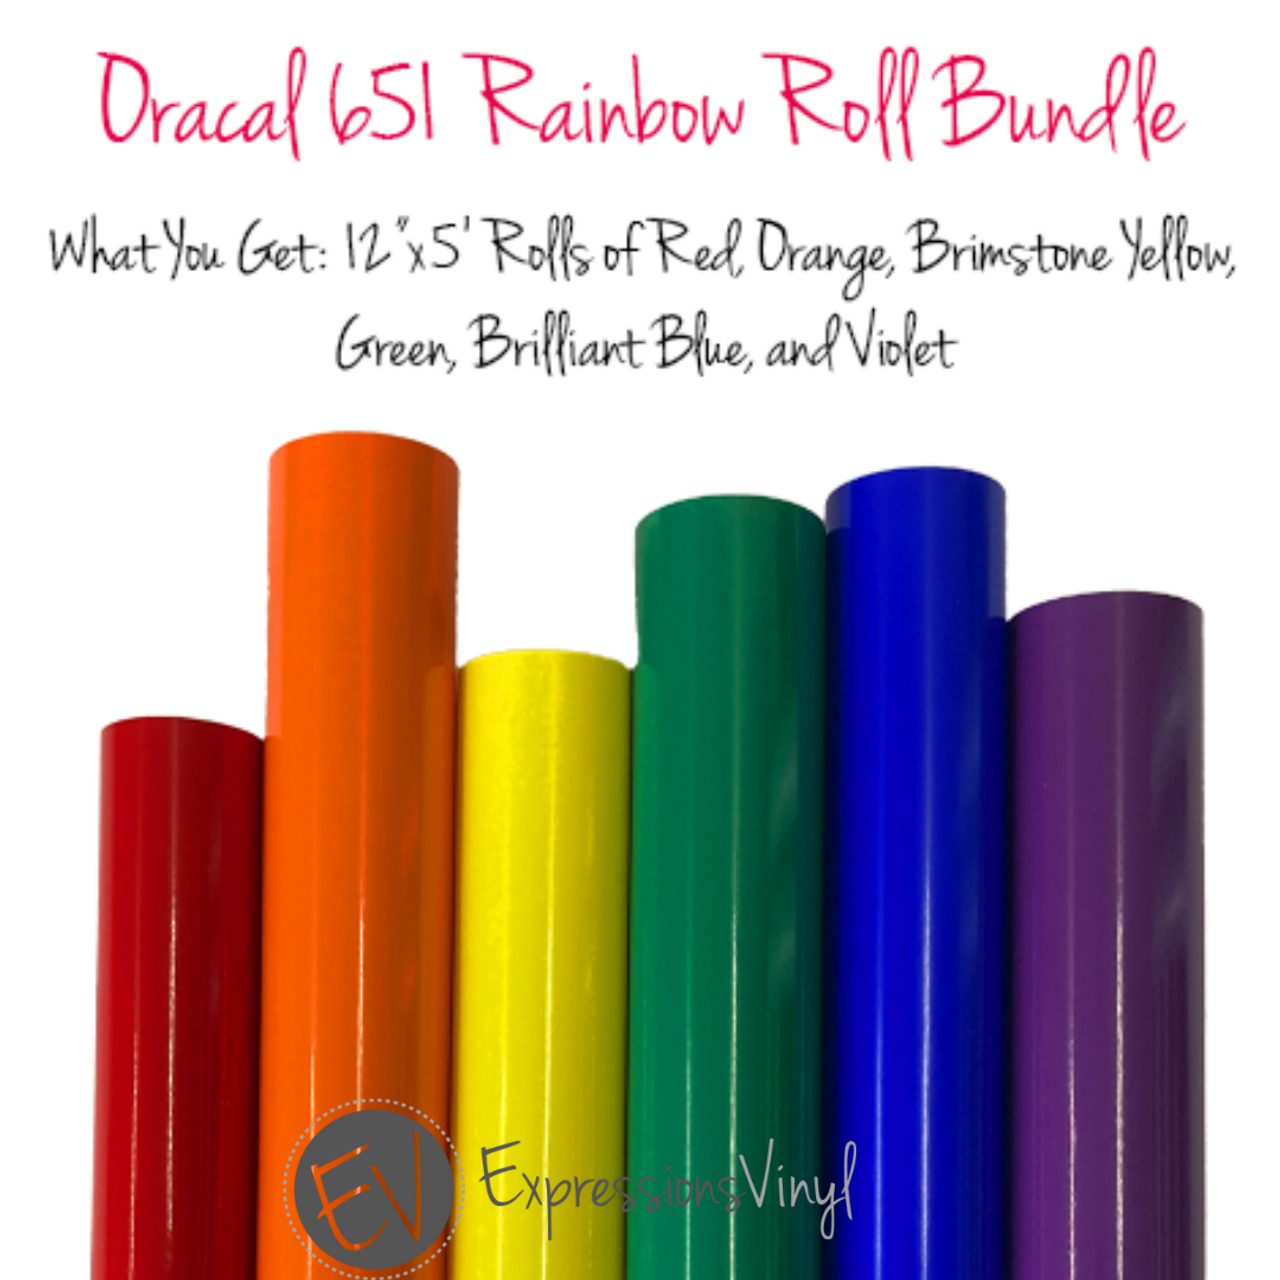 Oracal 651 Rainbow 5ft. Roll Bundle